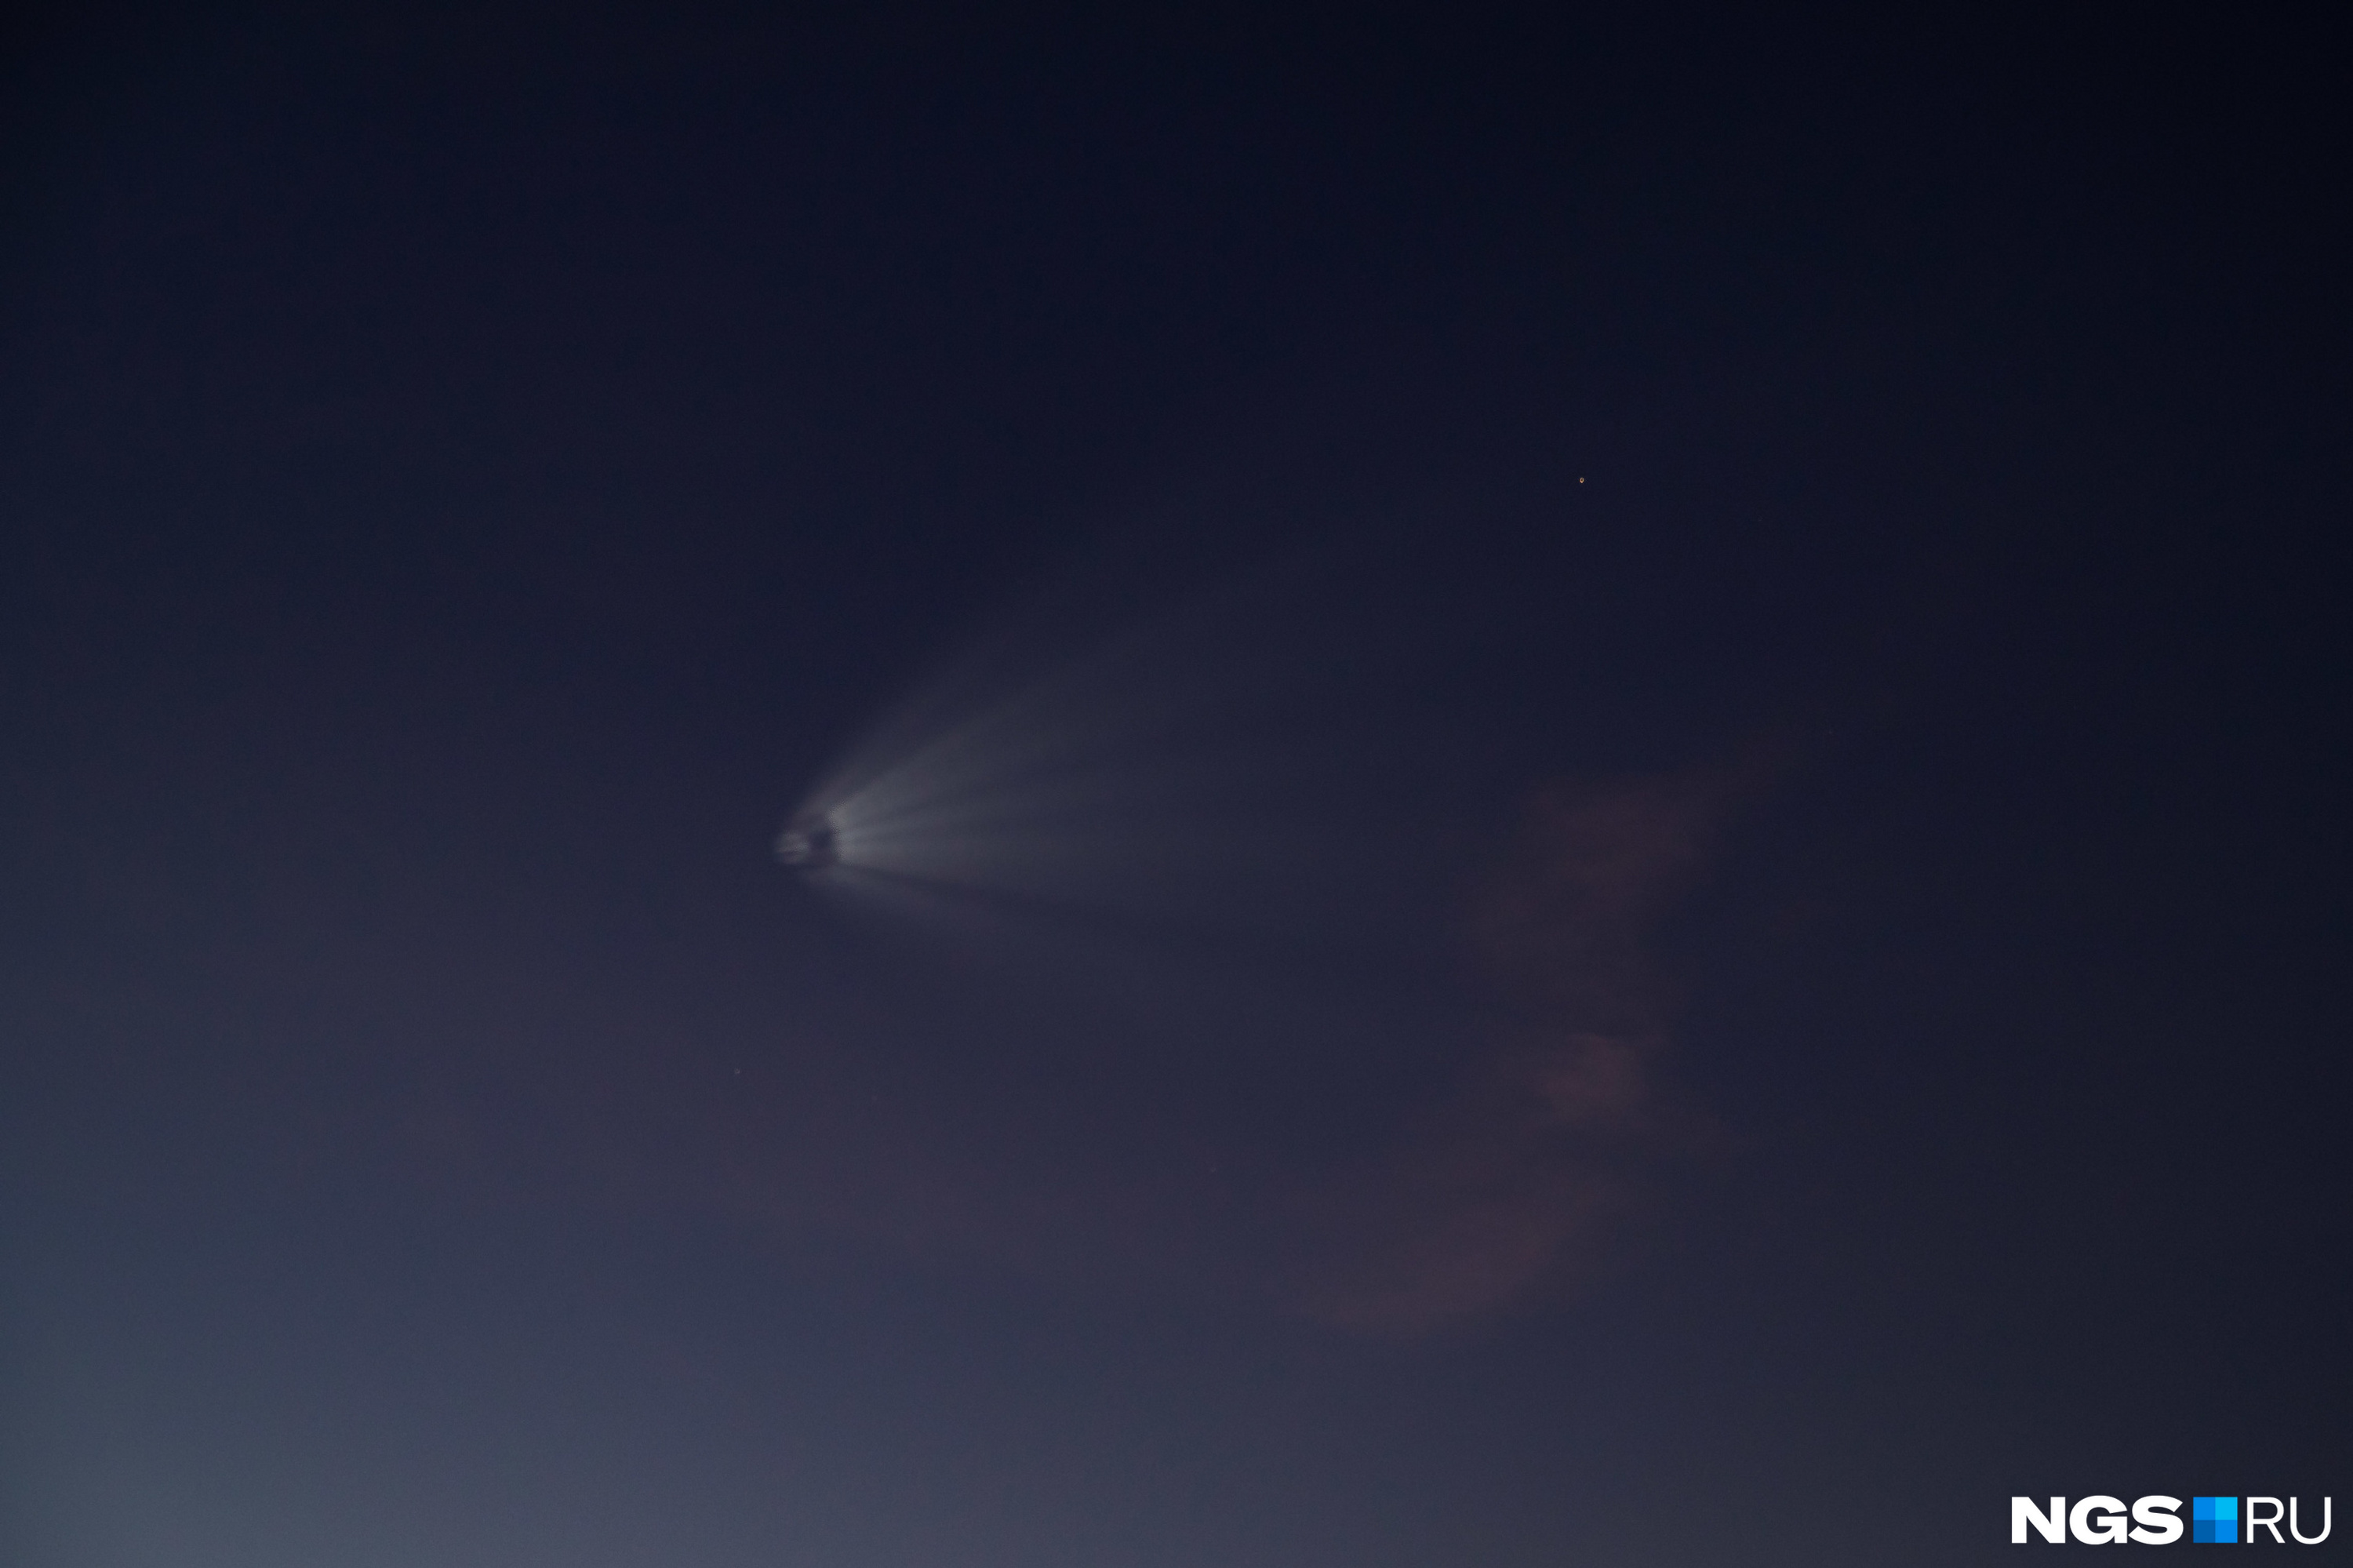 Ракета над новосибирском. Солнечное затмение с МКС. Объект в небе. Объект в небе над Новосибирском вчера. Ракеты в небе сегодня.